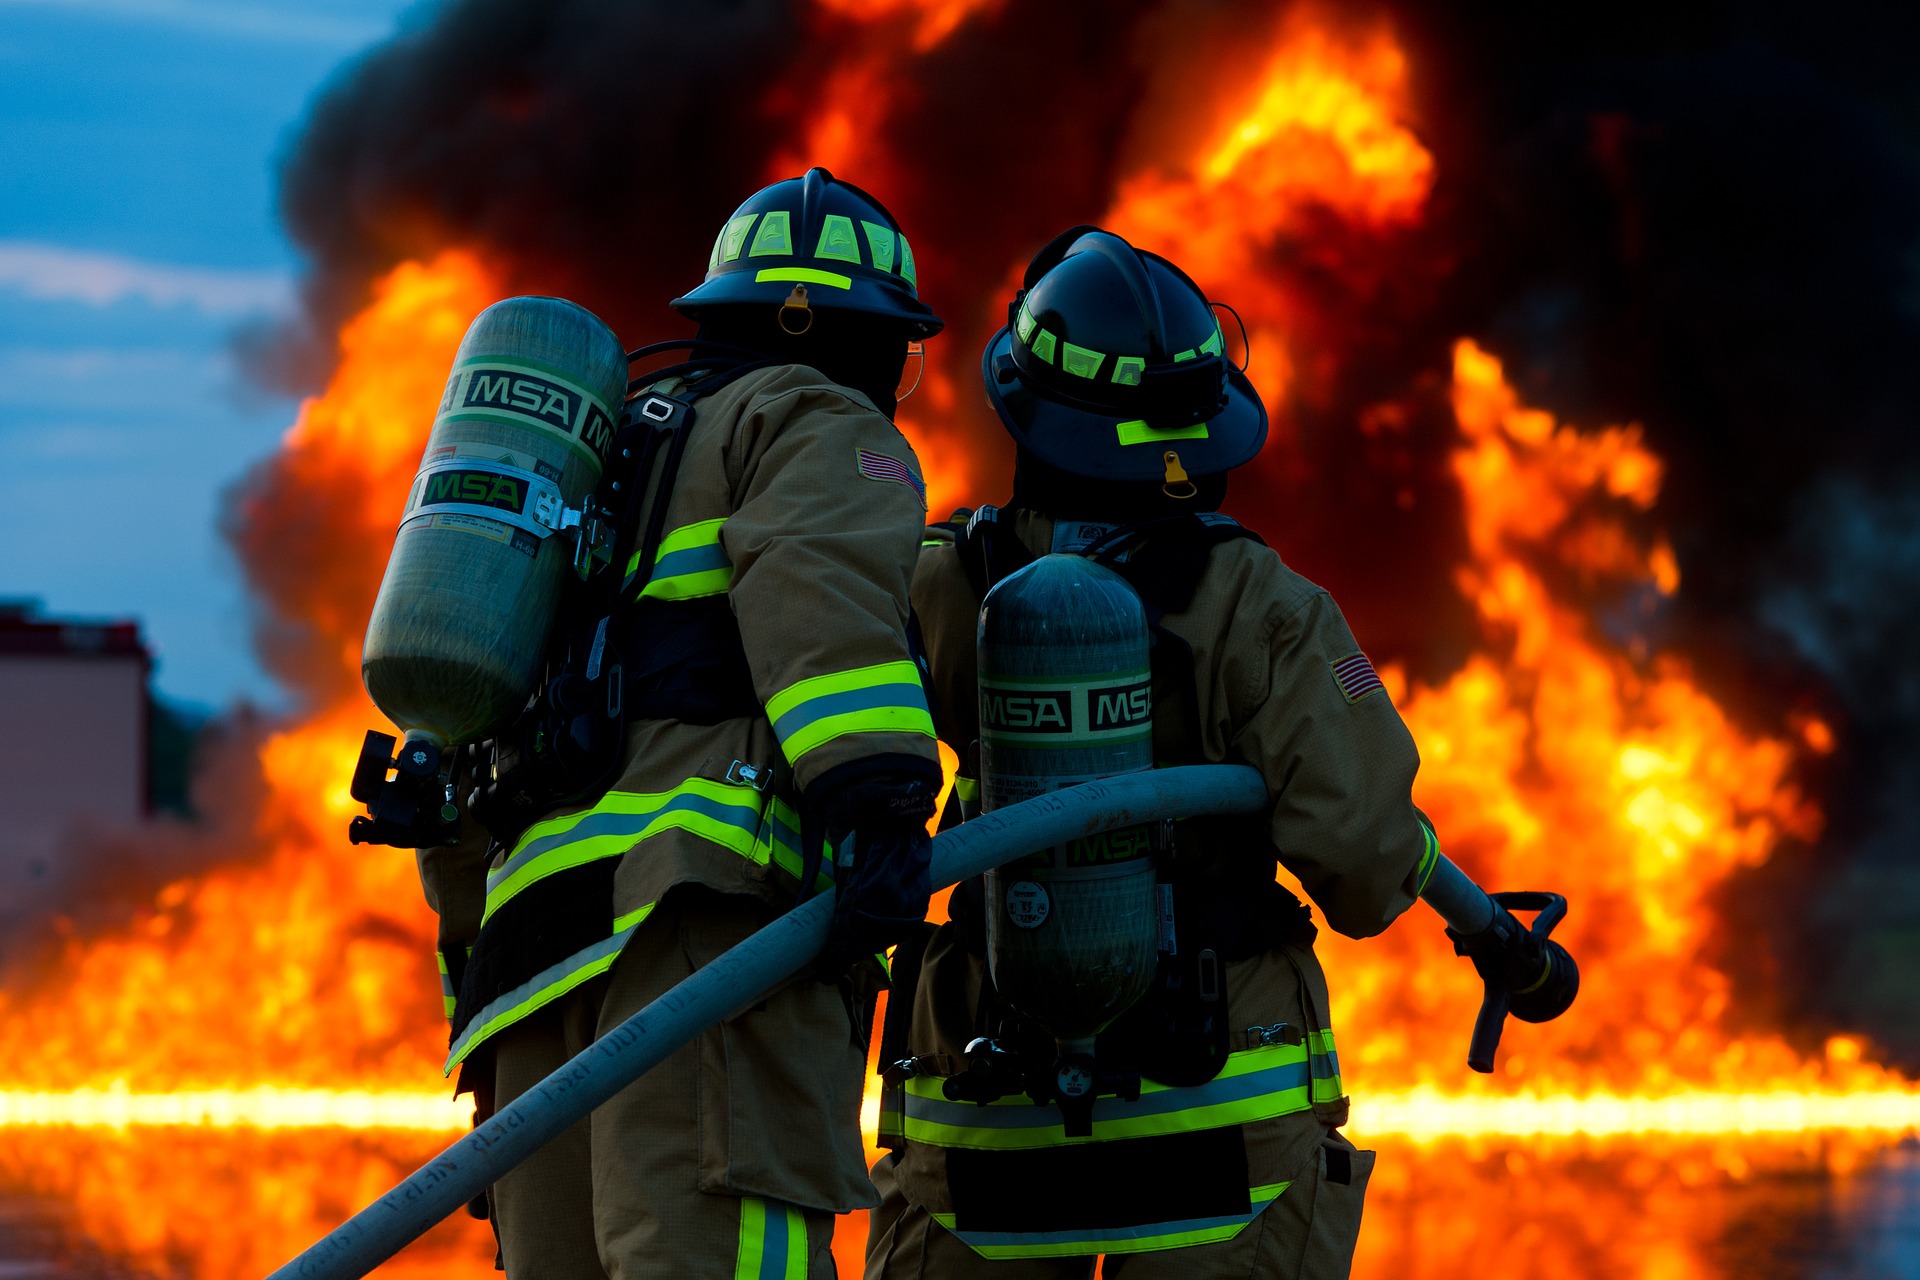 Bericht zur vfdb-Brandschadenstatistik jetzt online zum Herunterladen